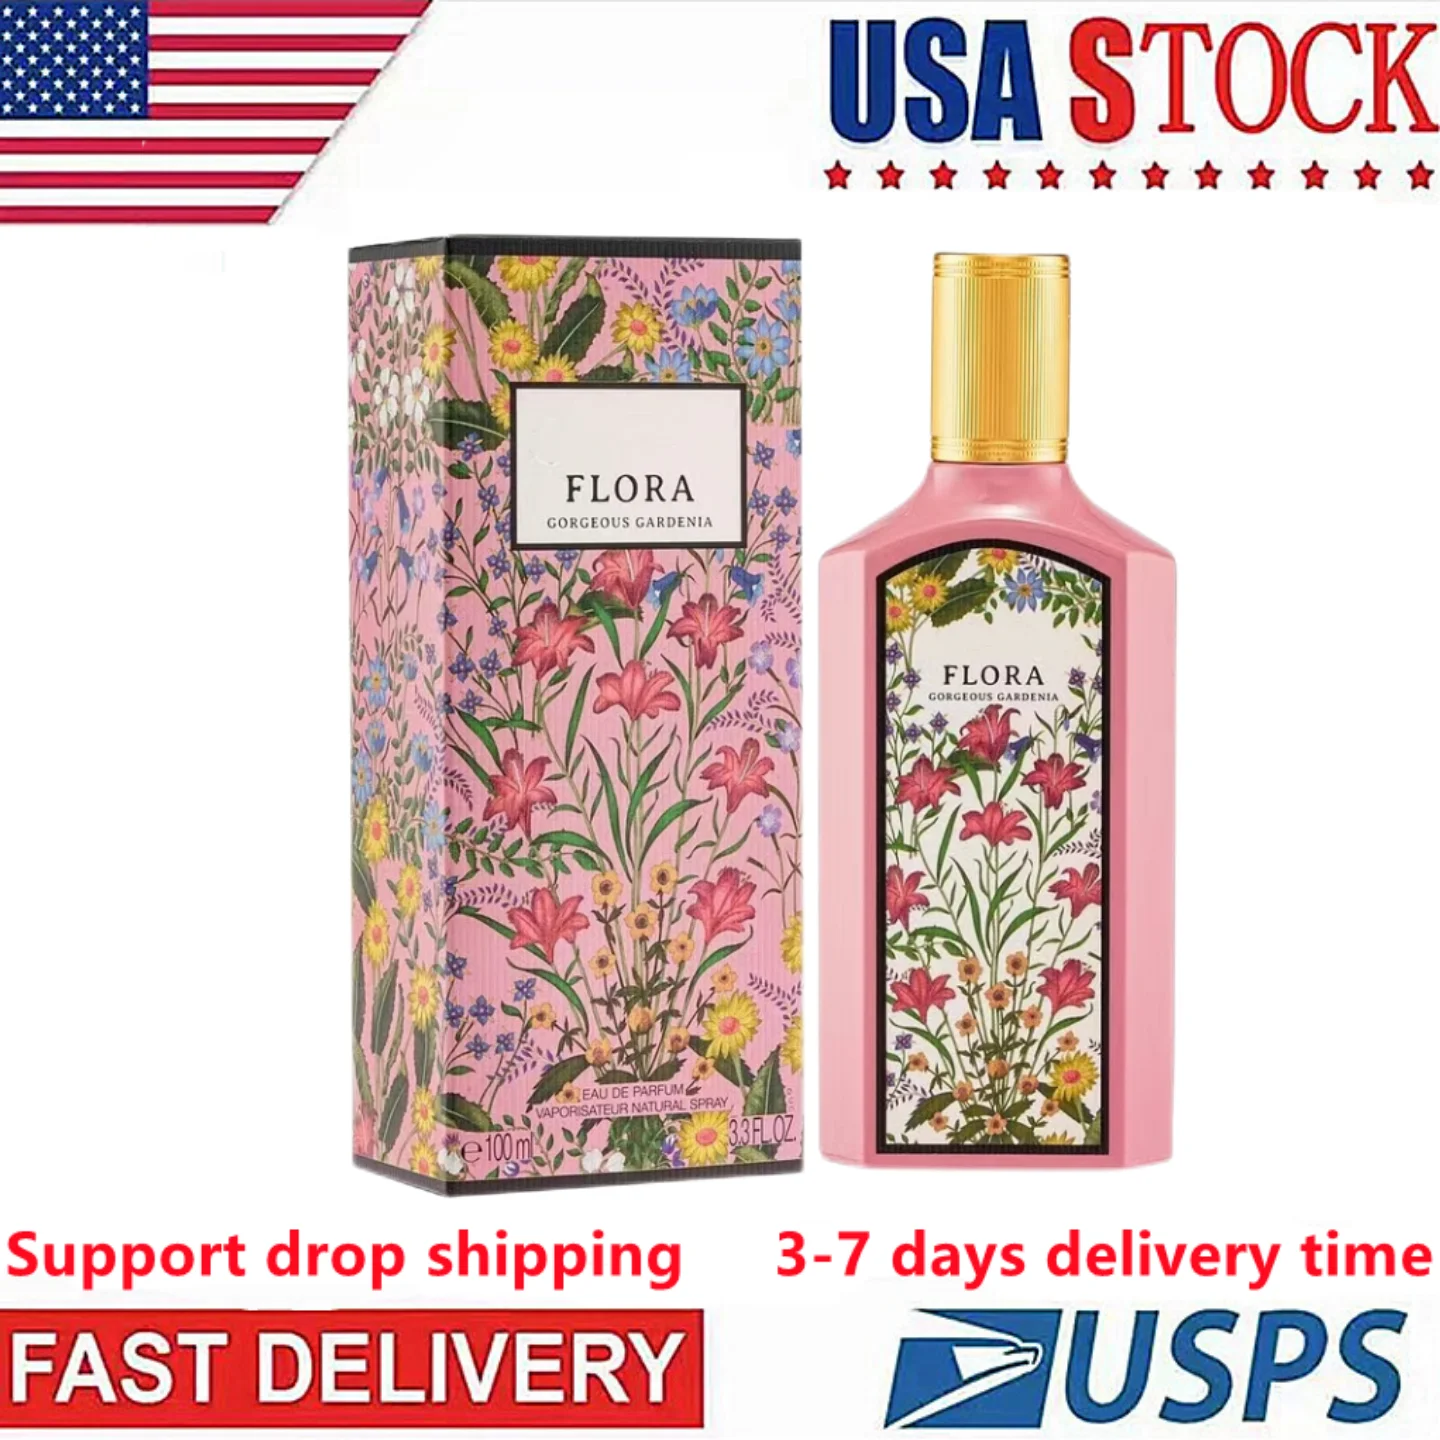 

Быстрая доставка в США в течение 3-6 дней, женские духи, флора, великолепный длительный аромат гардении, спрей для тела, хороший запах, парфюм для женщин